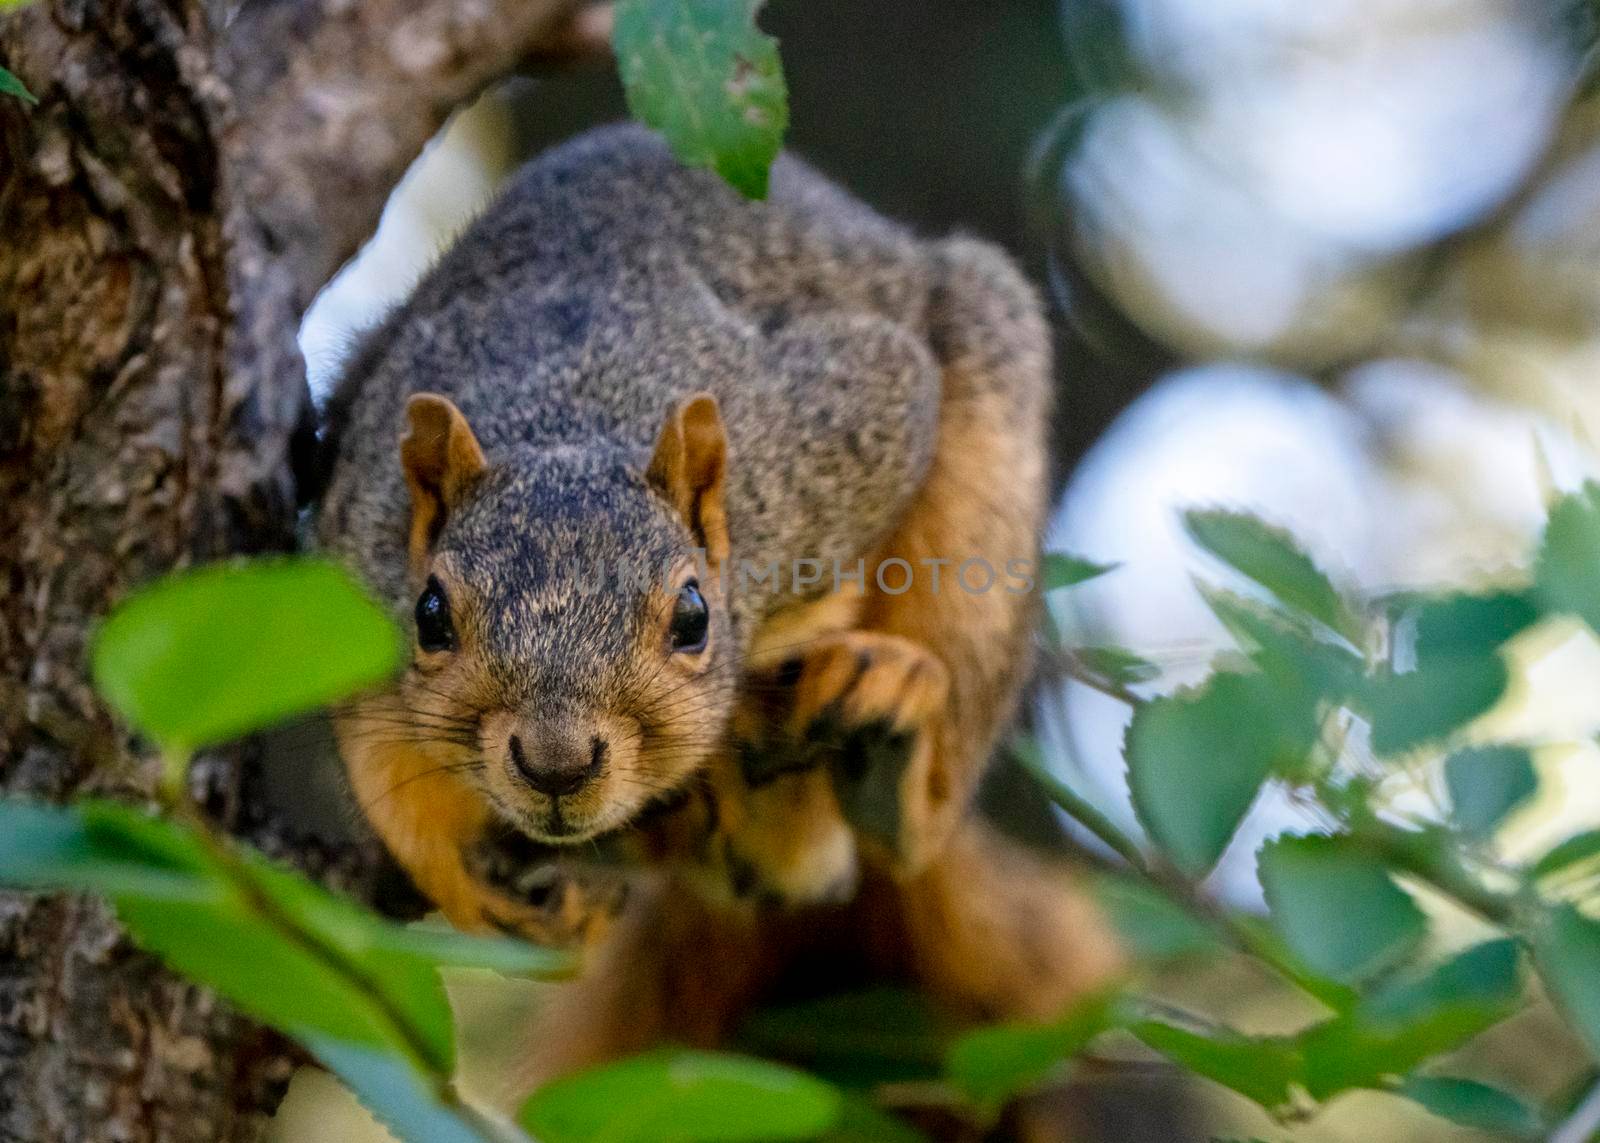 Squirrel in tree close up Saskatchewan Canada Summer